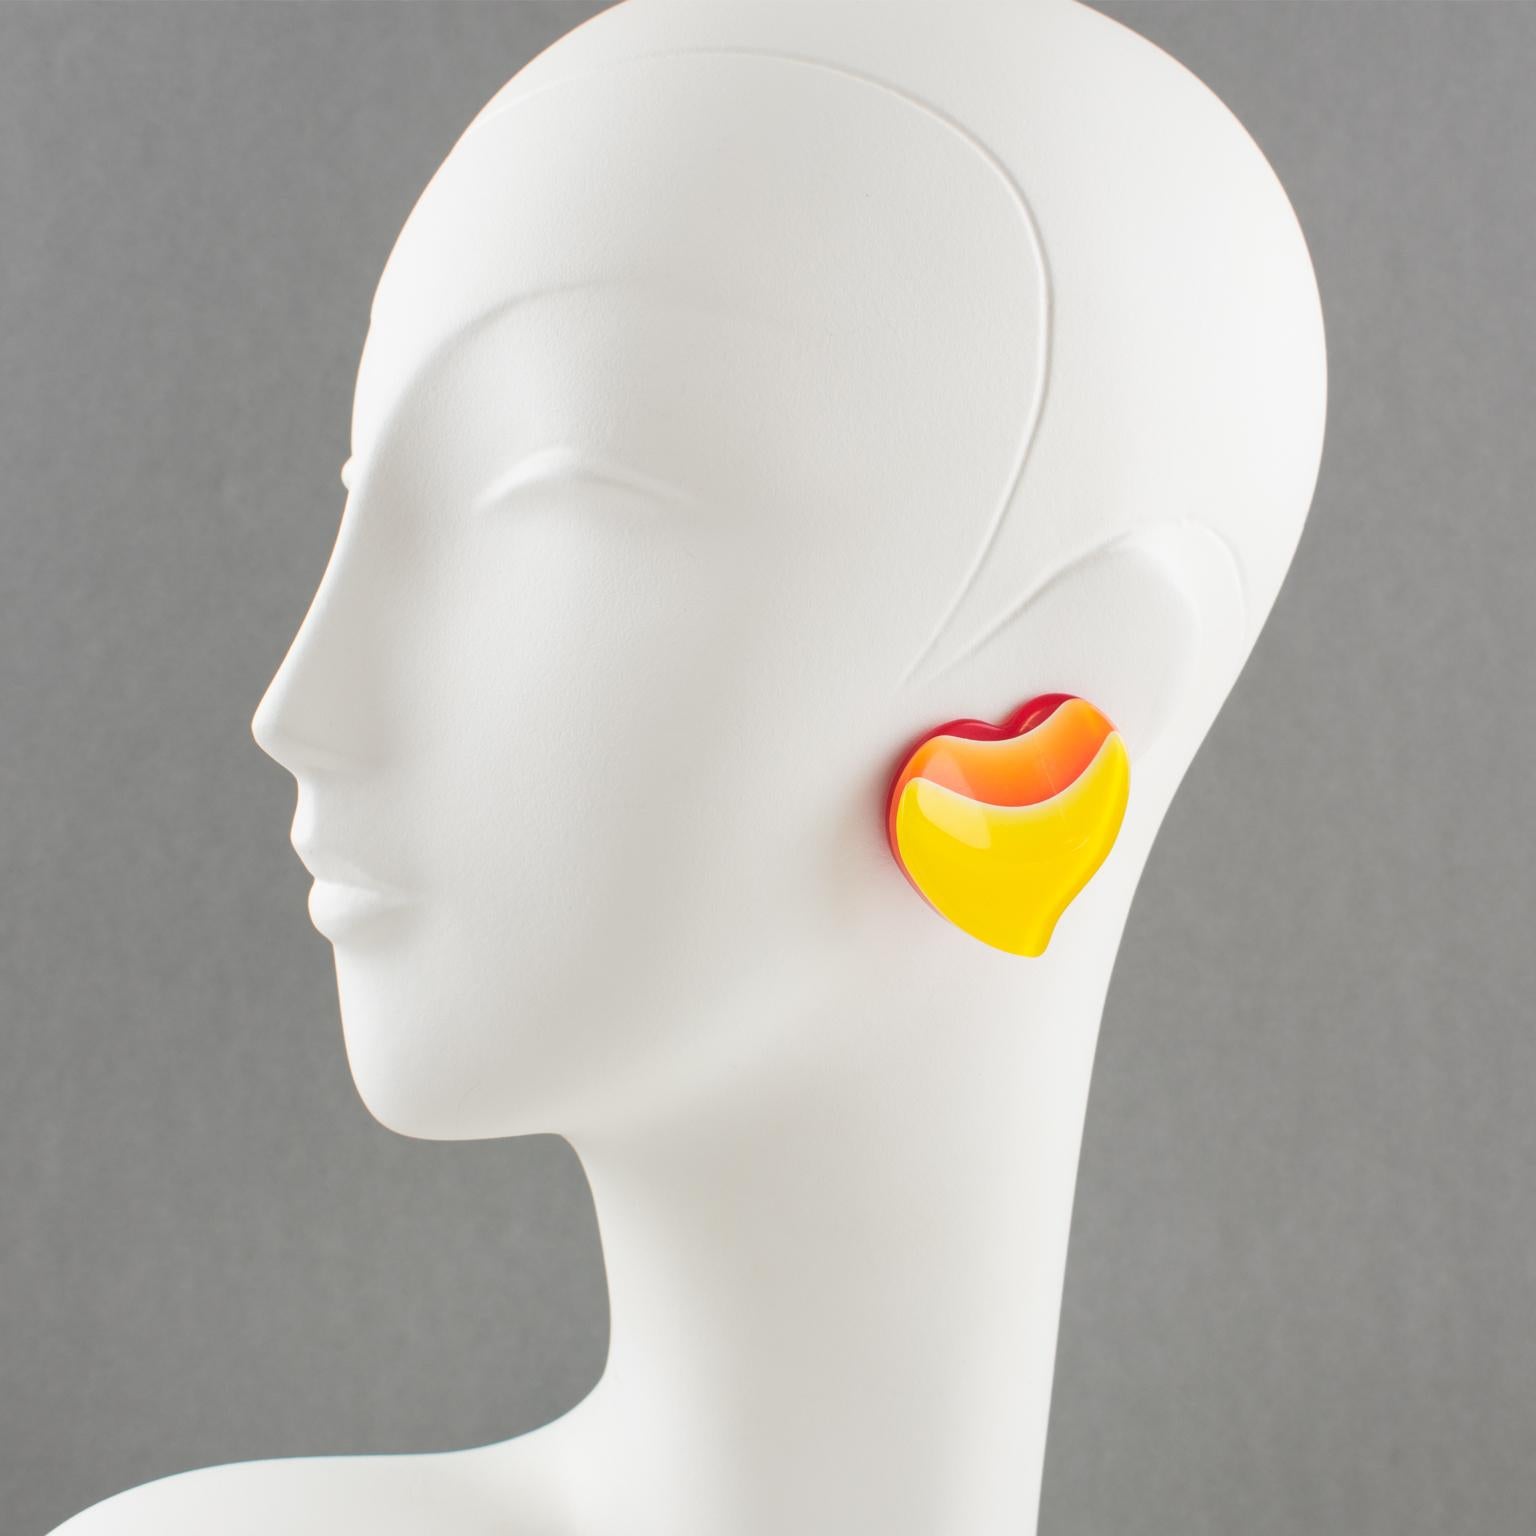 Hübsche übergroße Lucite-Ohrringe aus den 1960er Jahren. Sie weisen eine große geschnitzte Herzform mit Laminierung auf. Leuchtend rote Farbe Hintergrund schattiert mit orange und gelb hellen Farben. Es gibt keine sichtbare